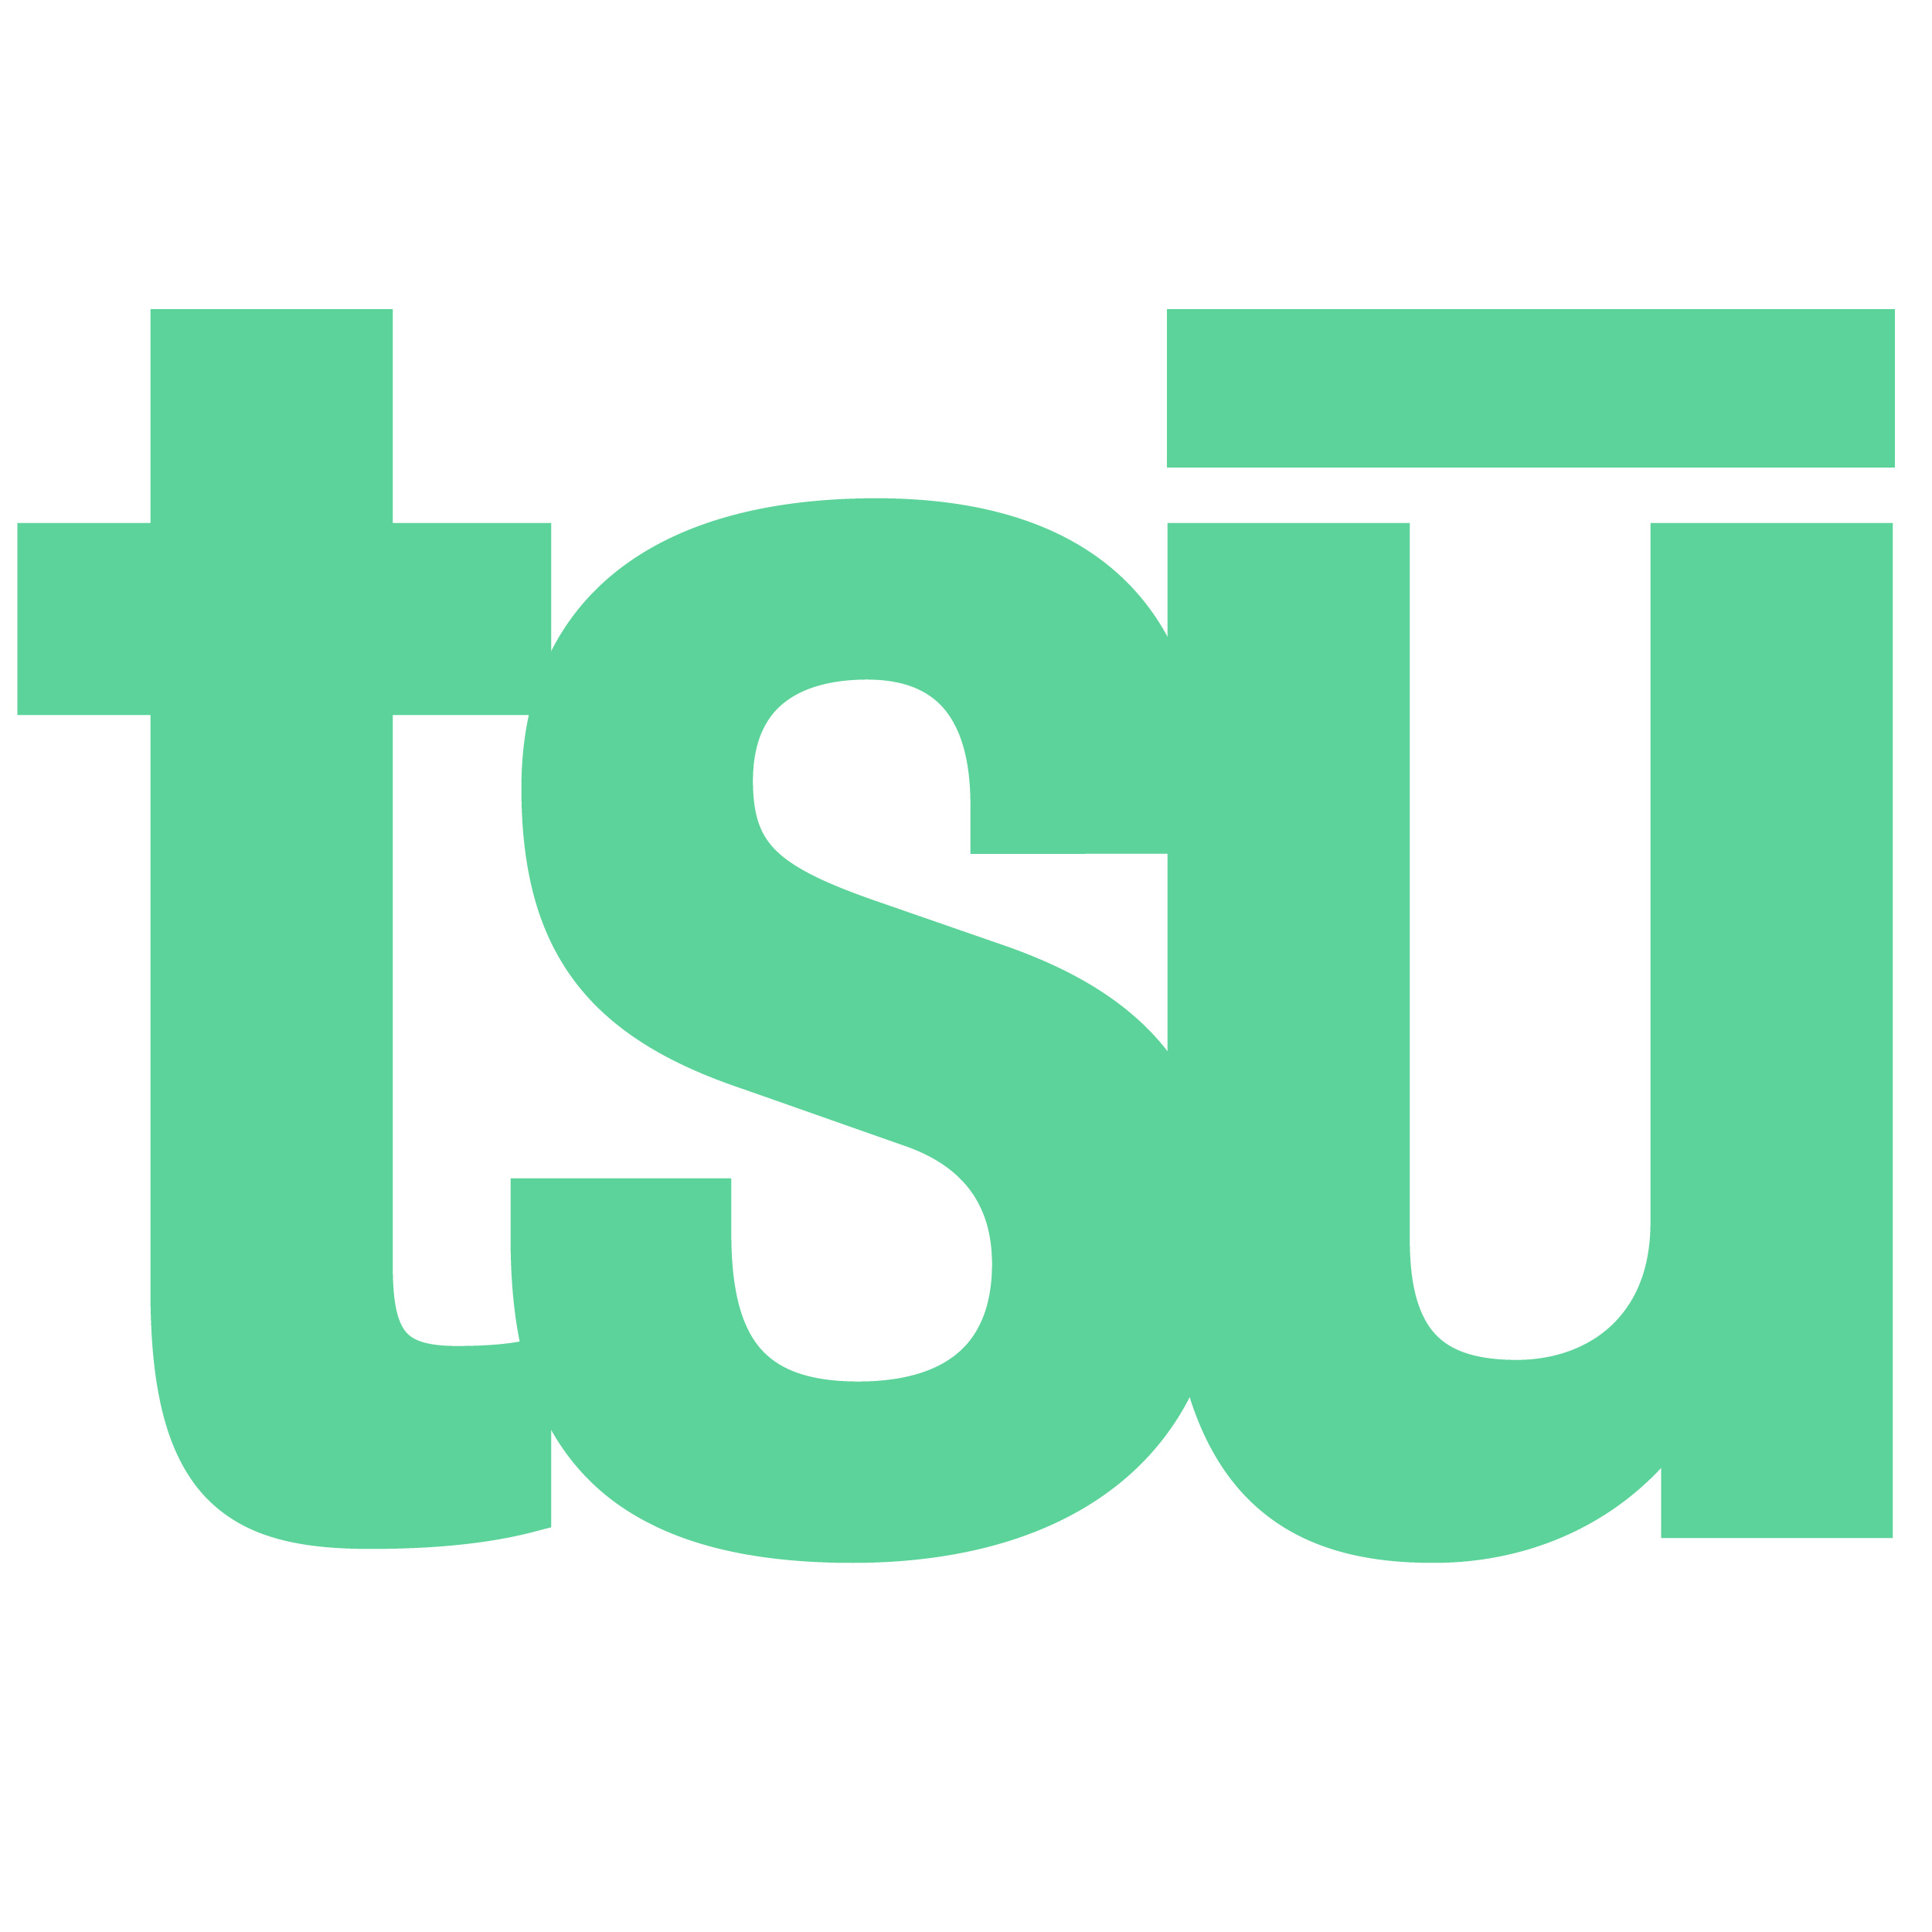 Tsu logo